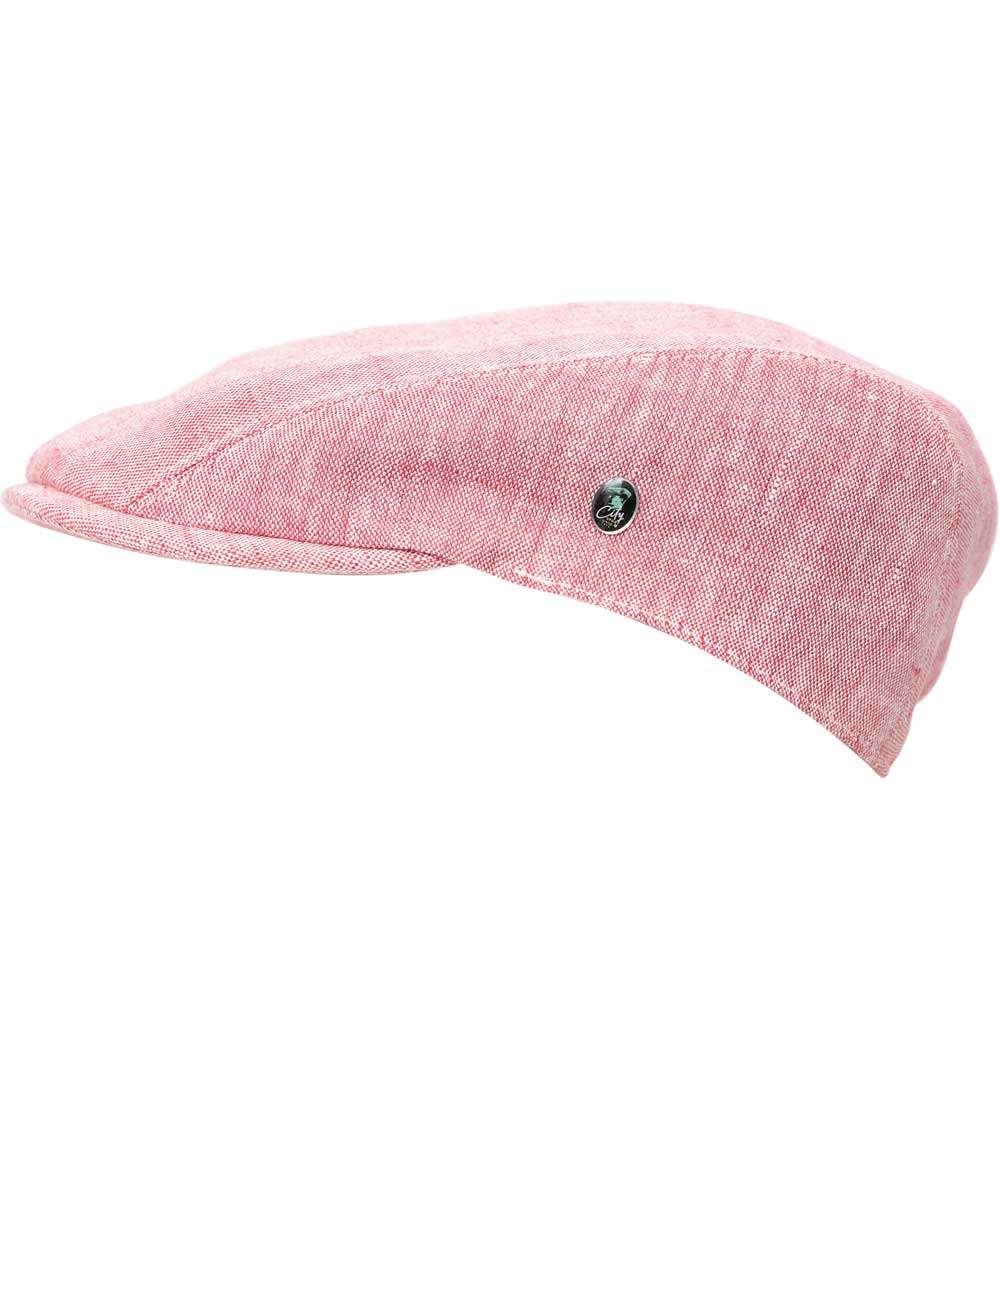 Flatcap Schiebermütze pink side